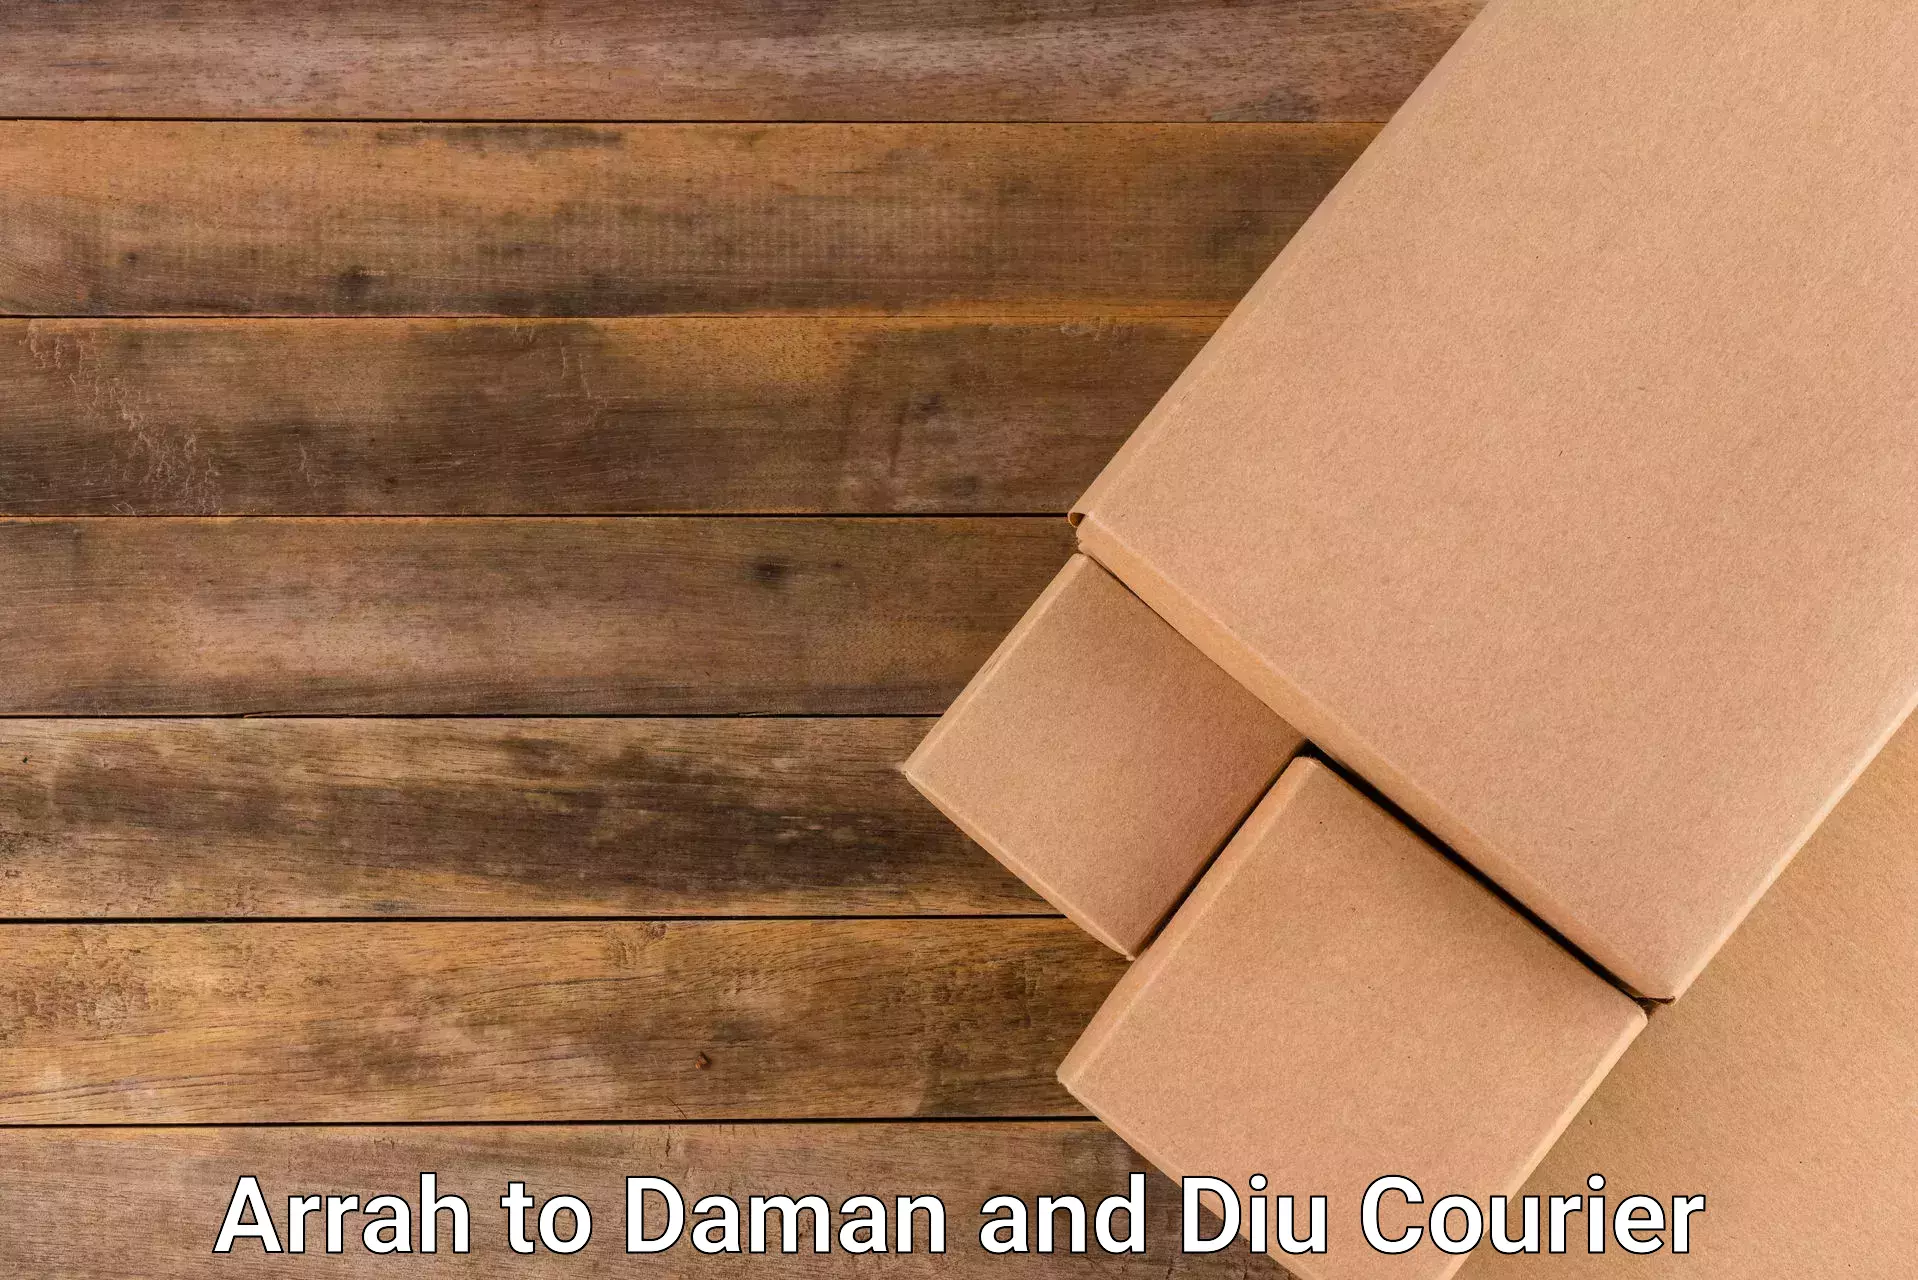 Bulk courier orders Arrah to Daman and Diu